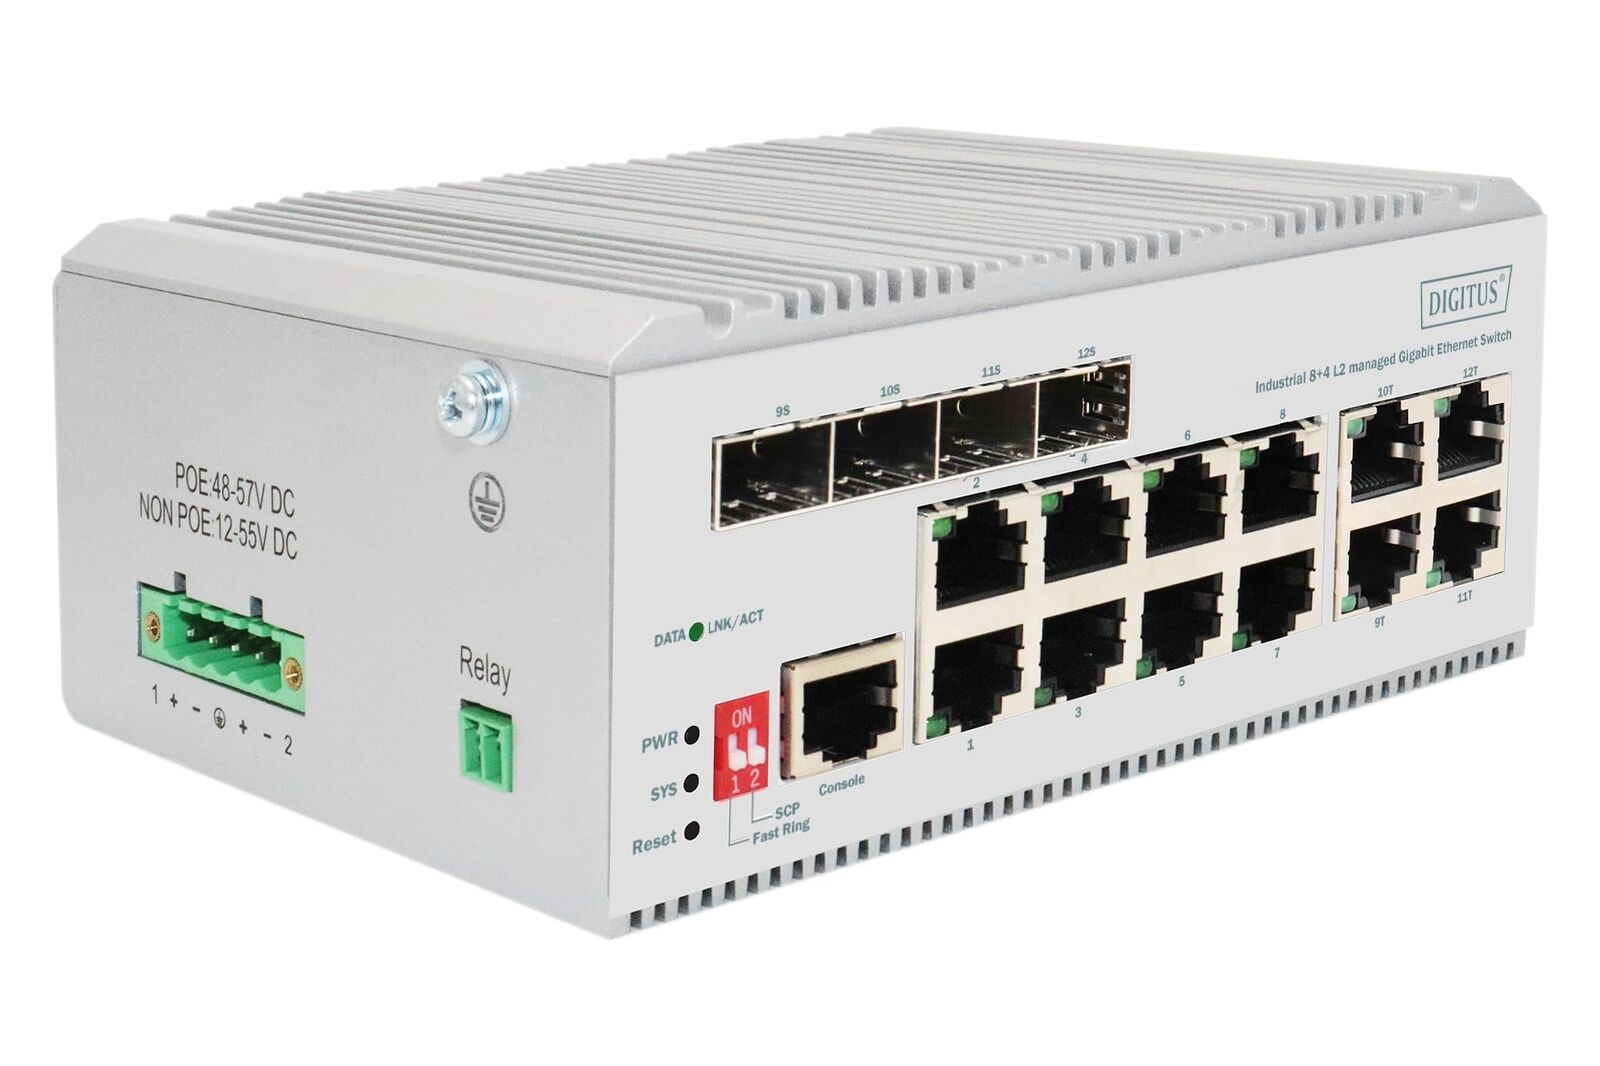 DIGITUS industrieller Managed 12-Port Gigabit Ethernet Netzwerk-Switch - 8X RJ45